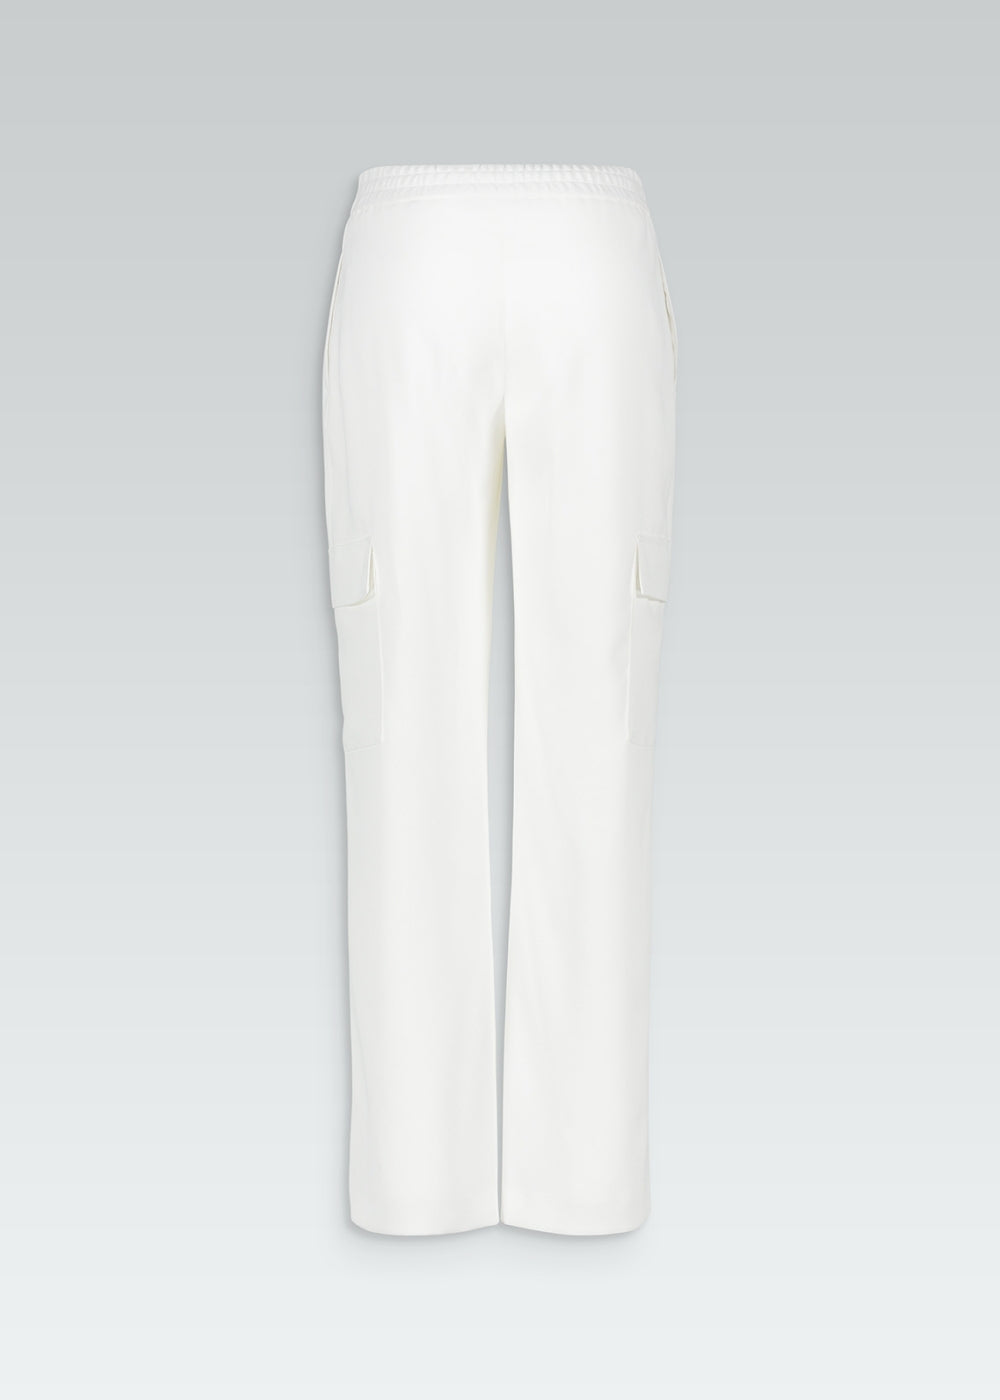 Pantalon cargo blanc poches larges latérales taille élastique